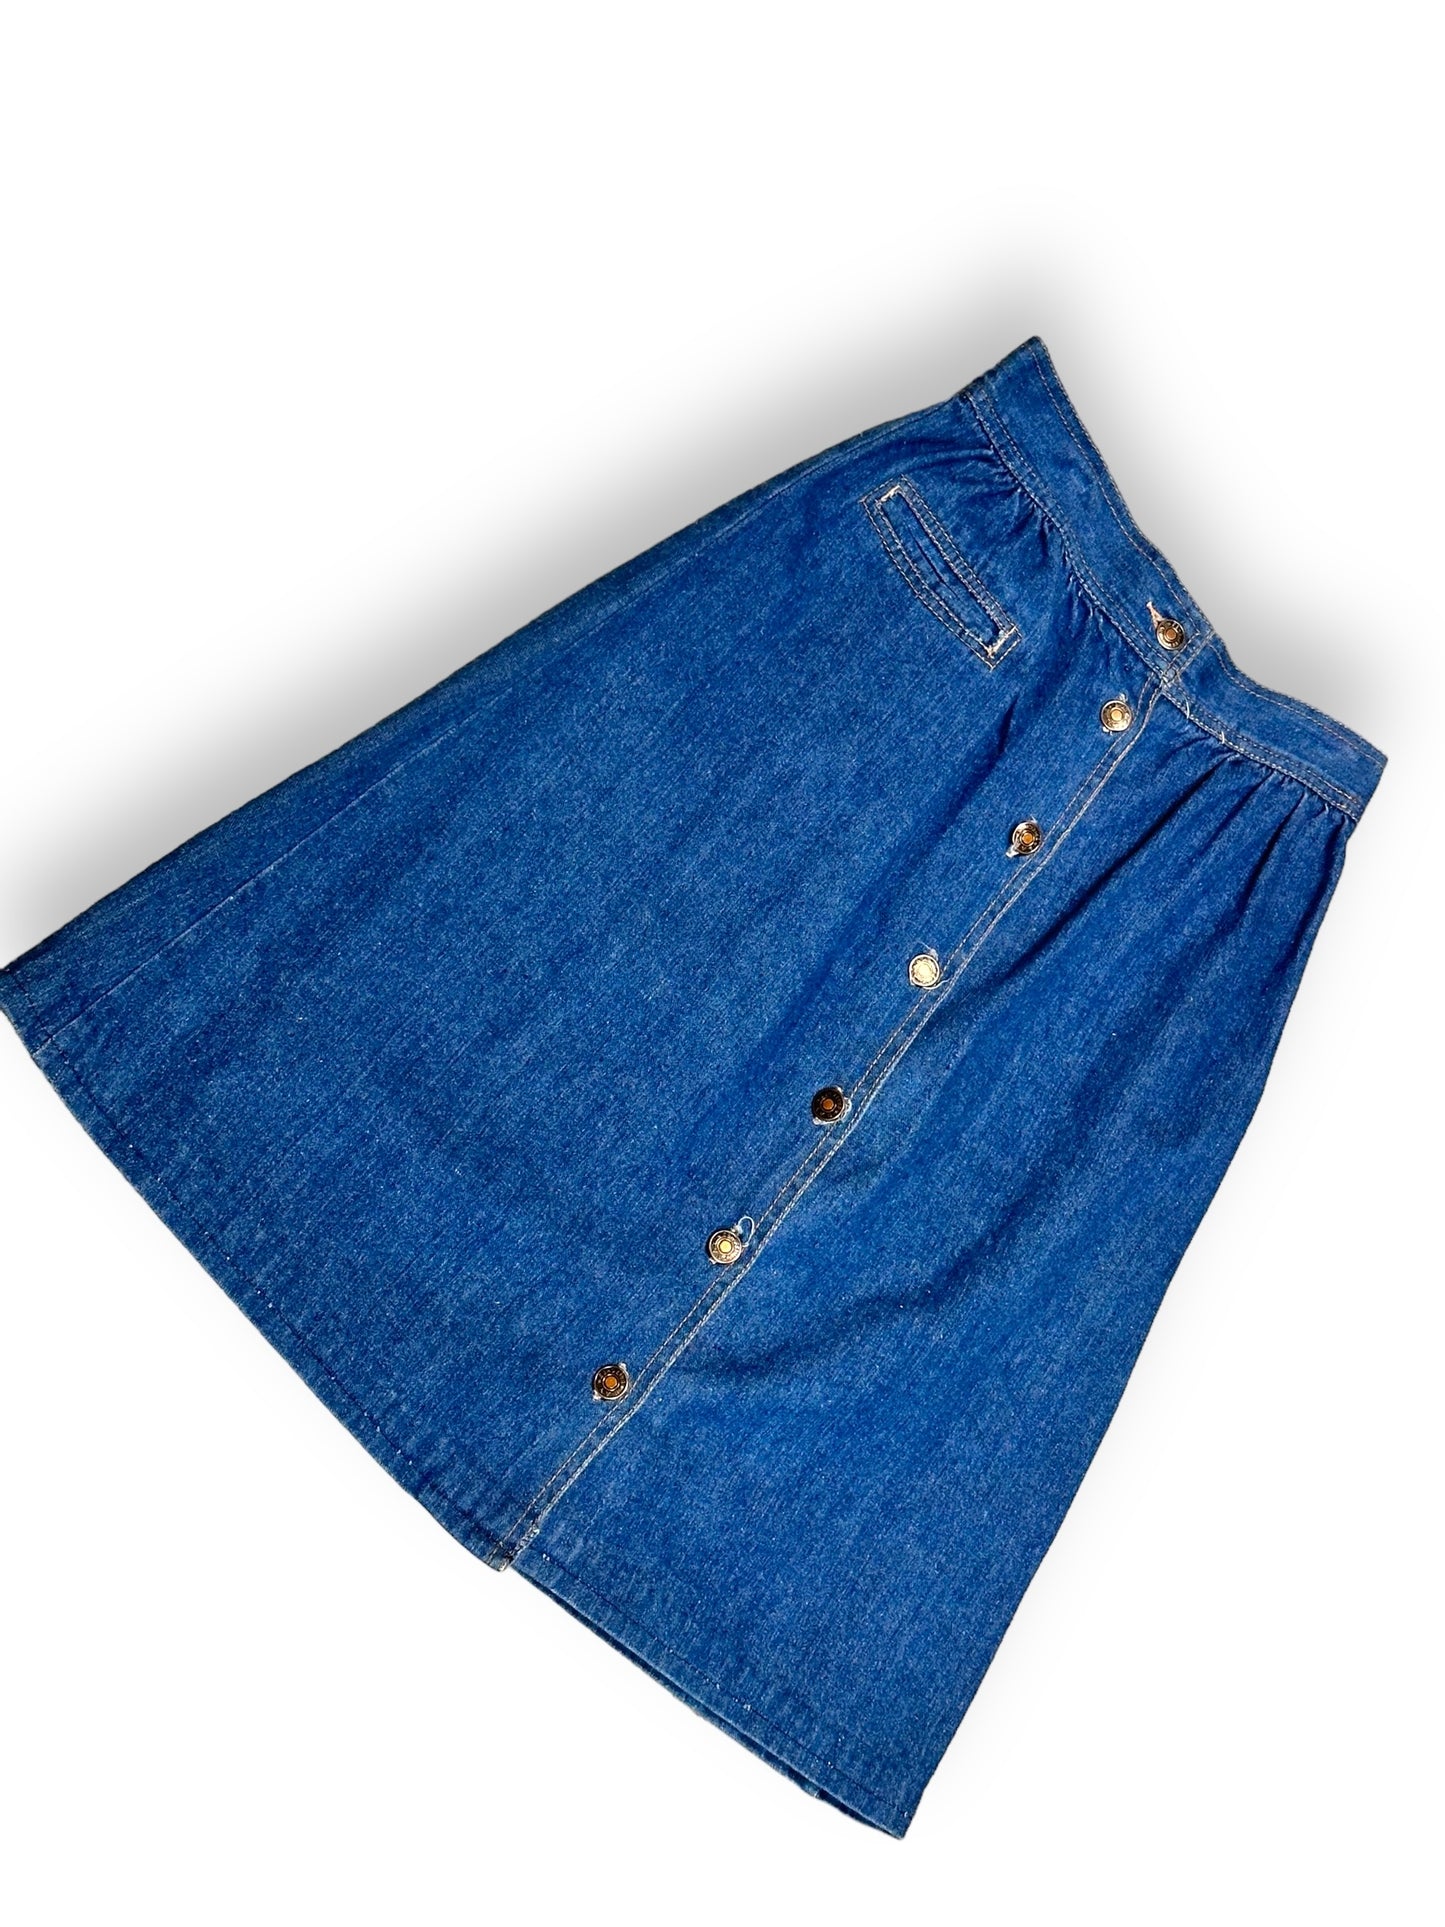 1970s Bay Britches Denim Skirt